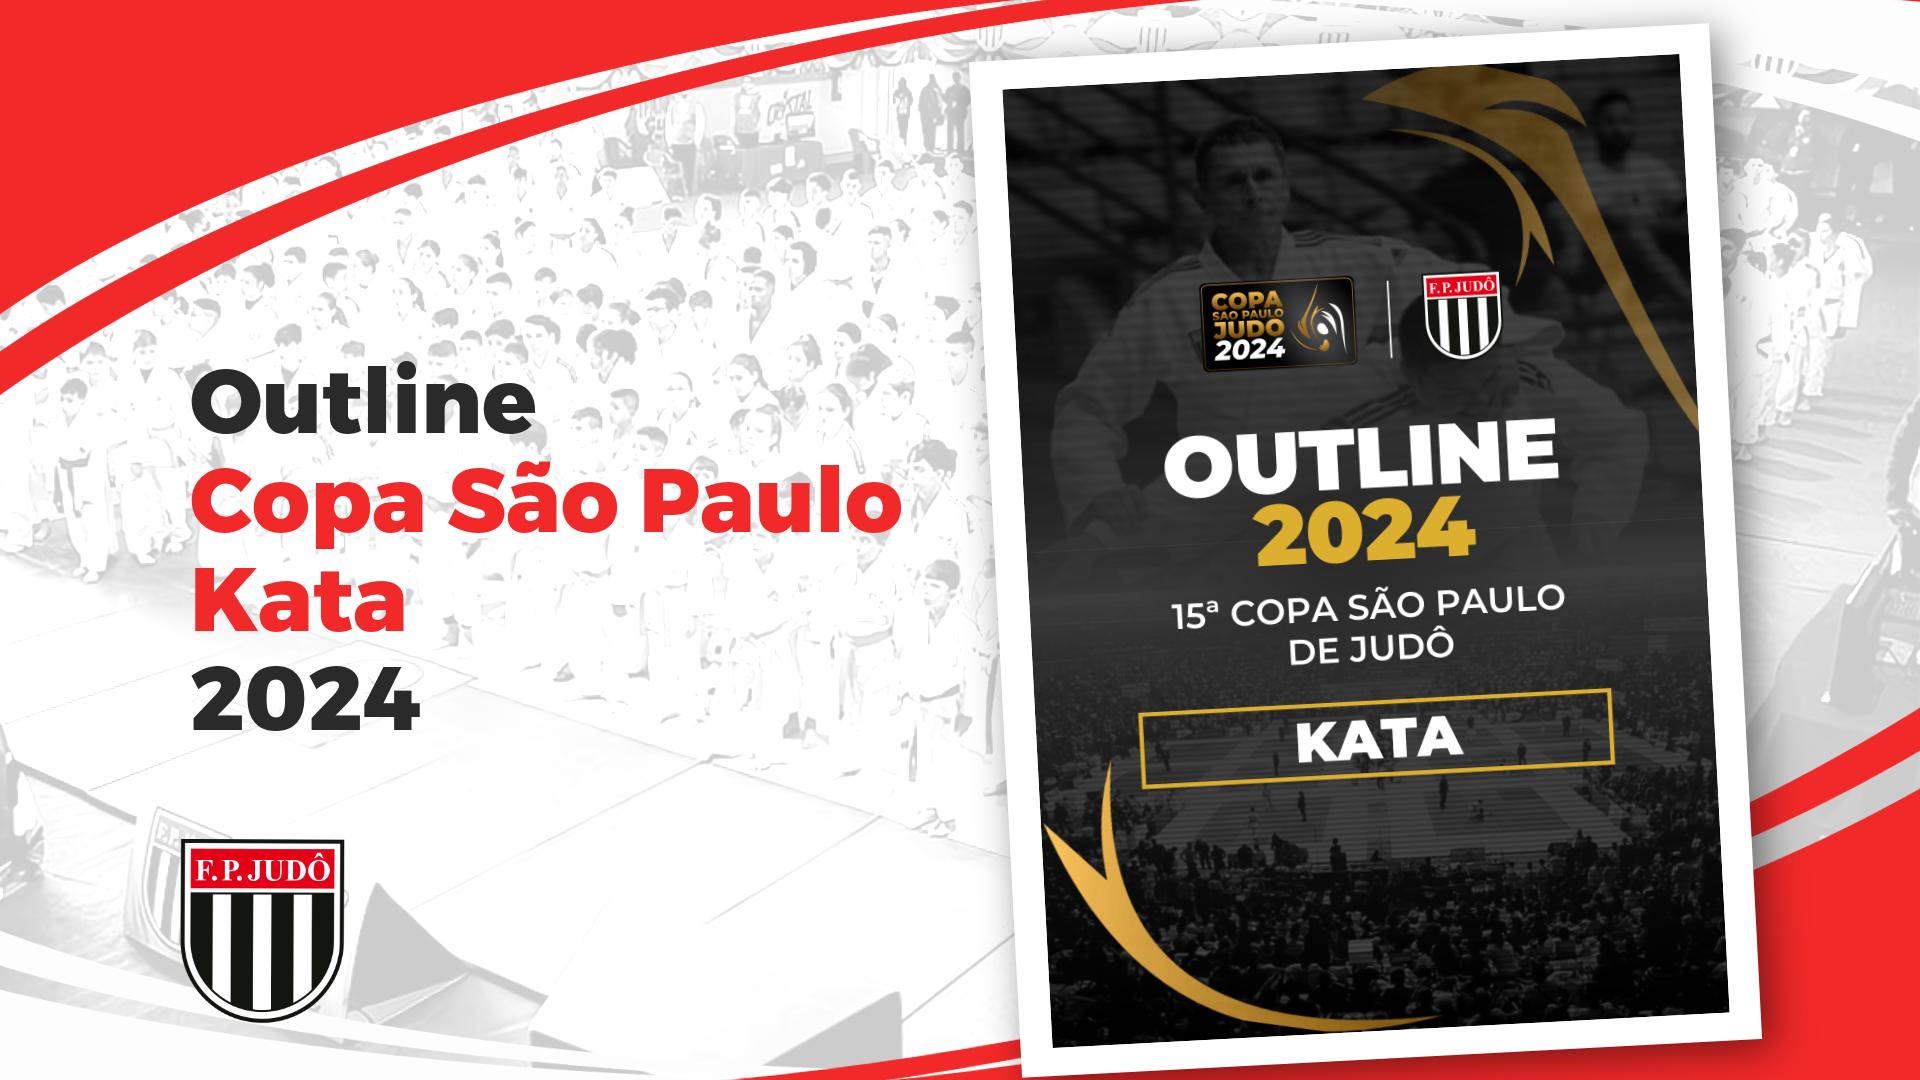 Outline Copa São Paulo 2024 - Kata